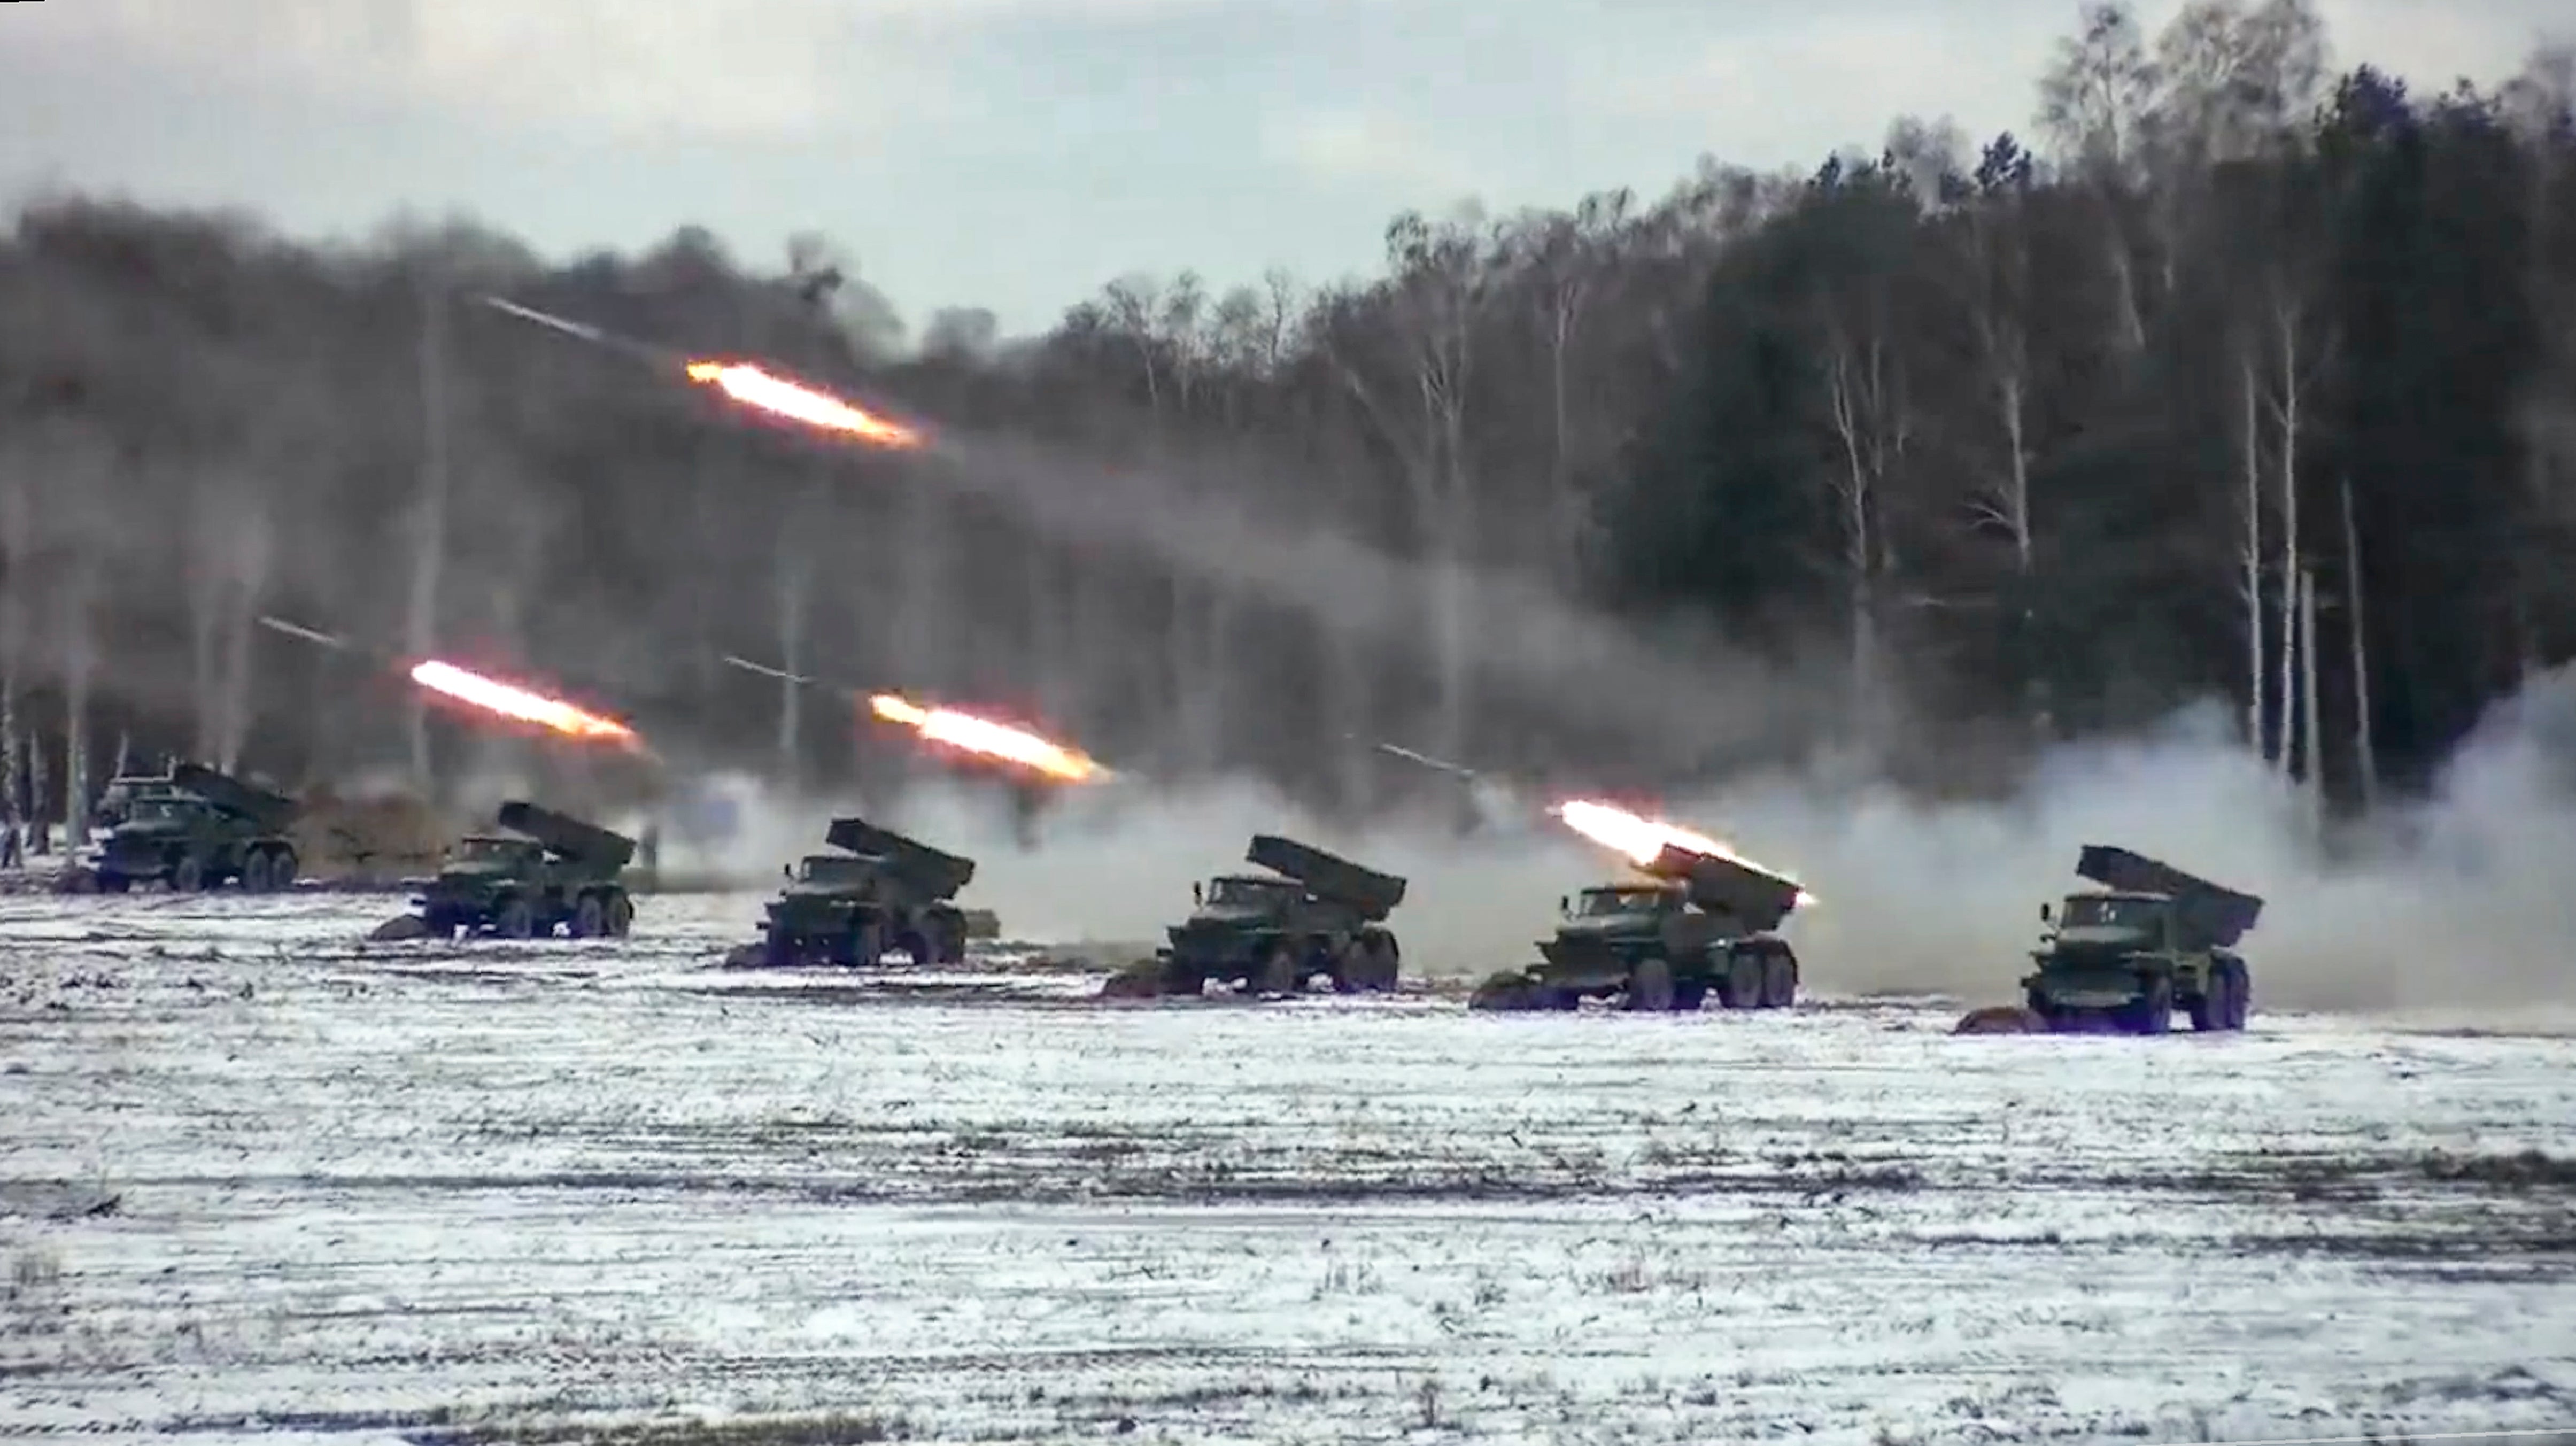 Múltiples lanzacohetes disparan durante los ejercicios militares conjuntos de Bielorrusia y Rusia en unas imágenes publicadas por el Ministerio de Defensa ruso